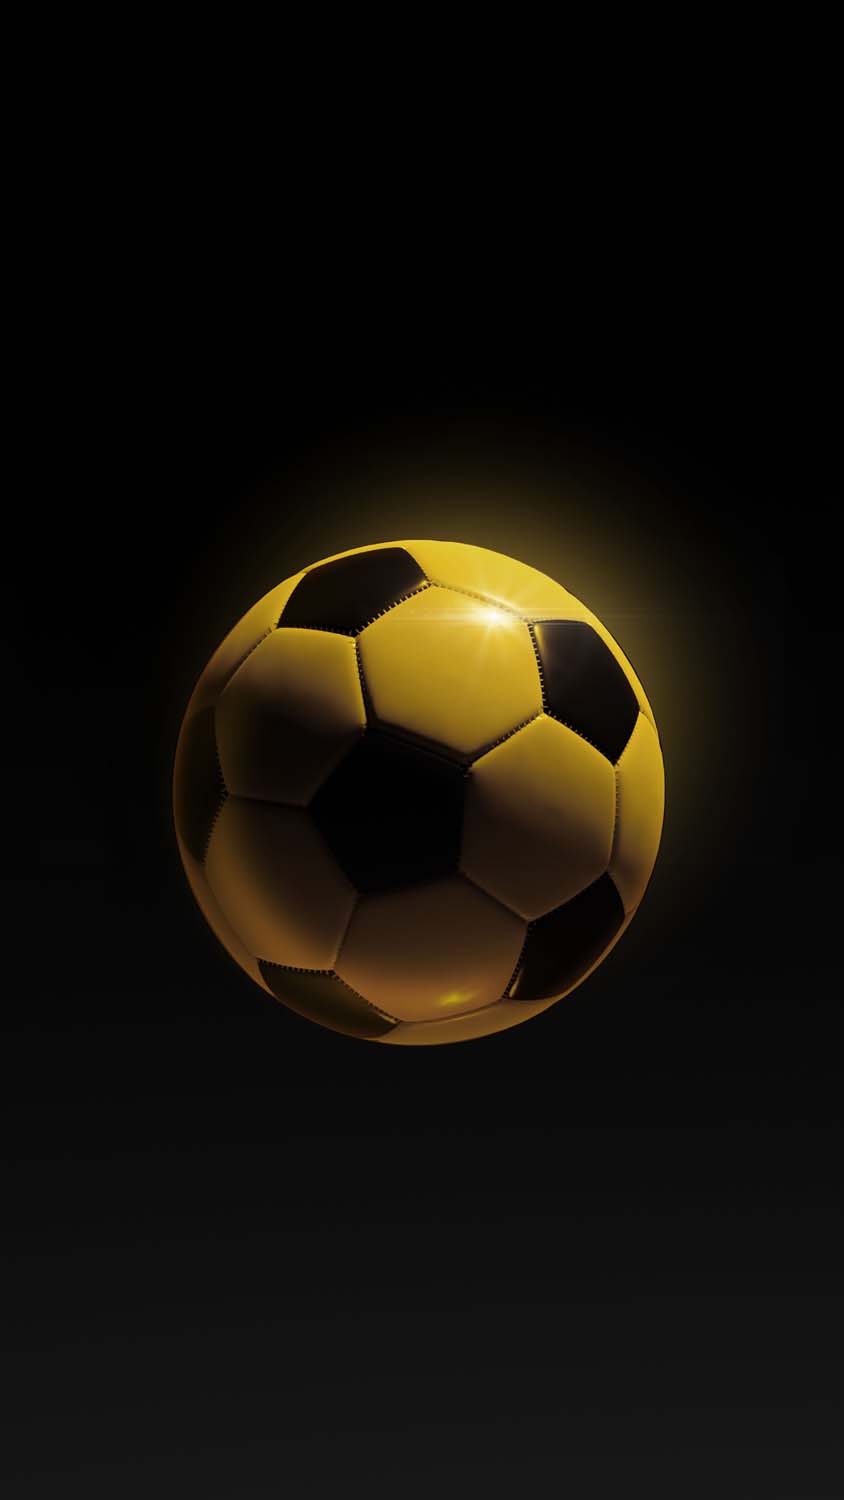 Soccer Ball iPhone Wallpaper HD